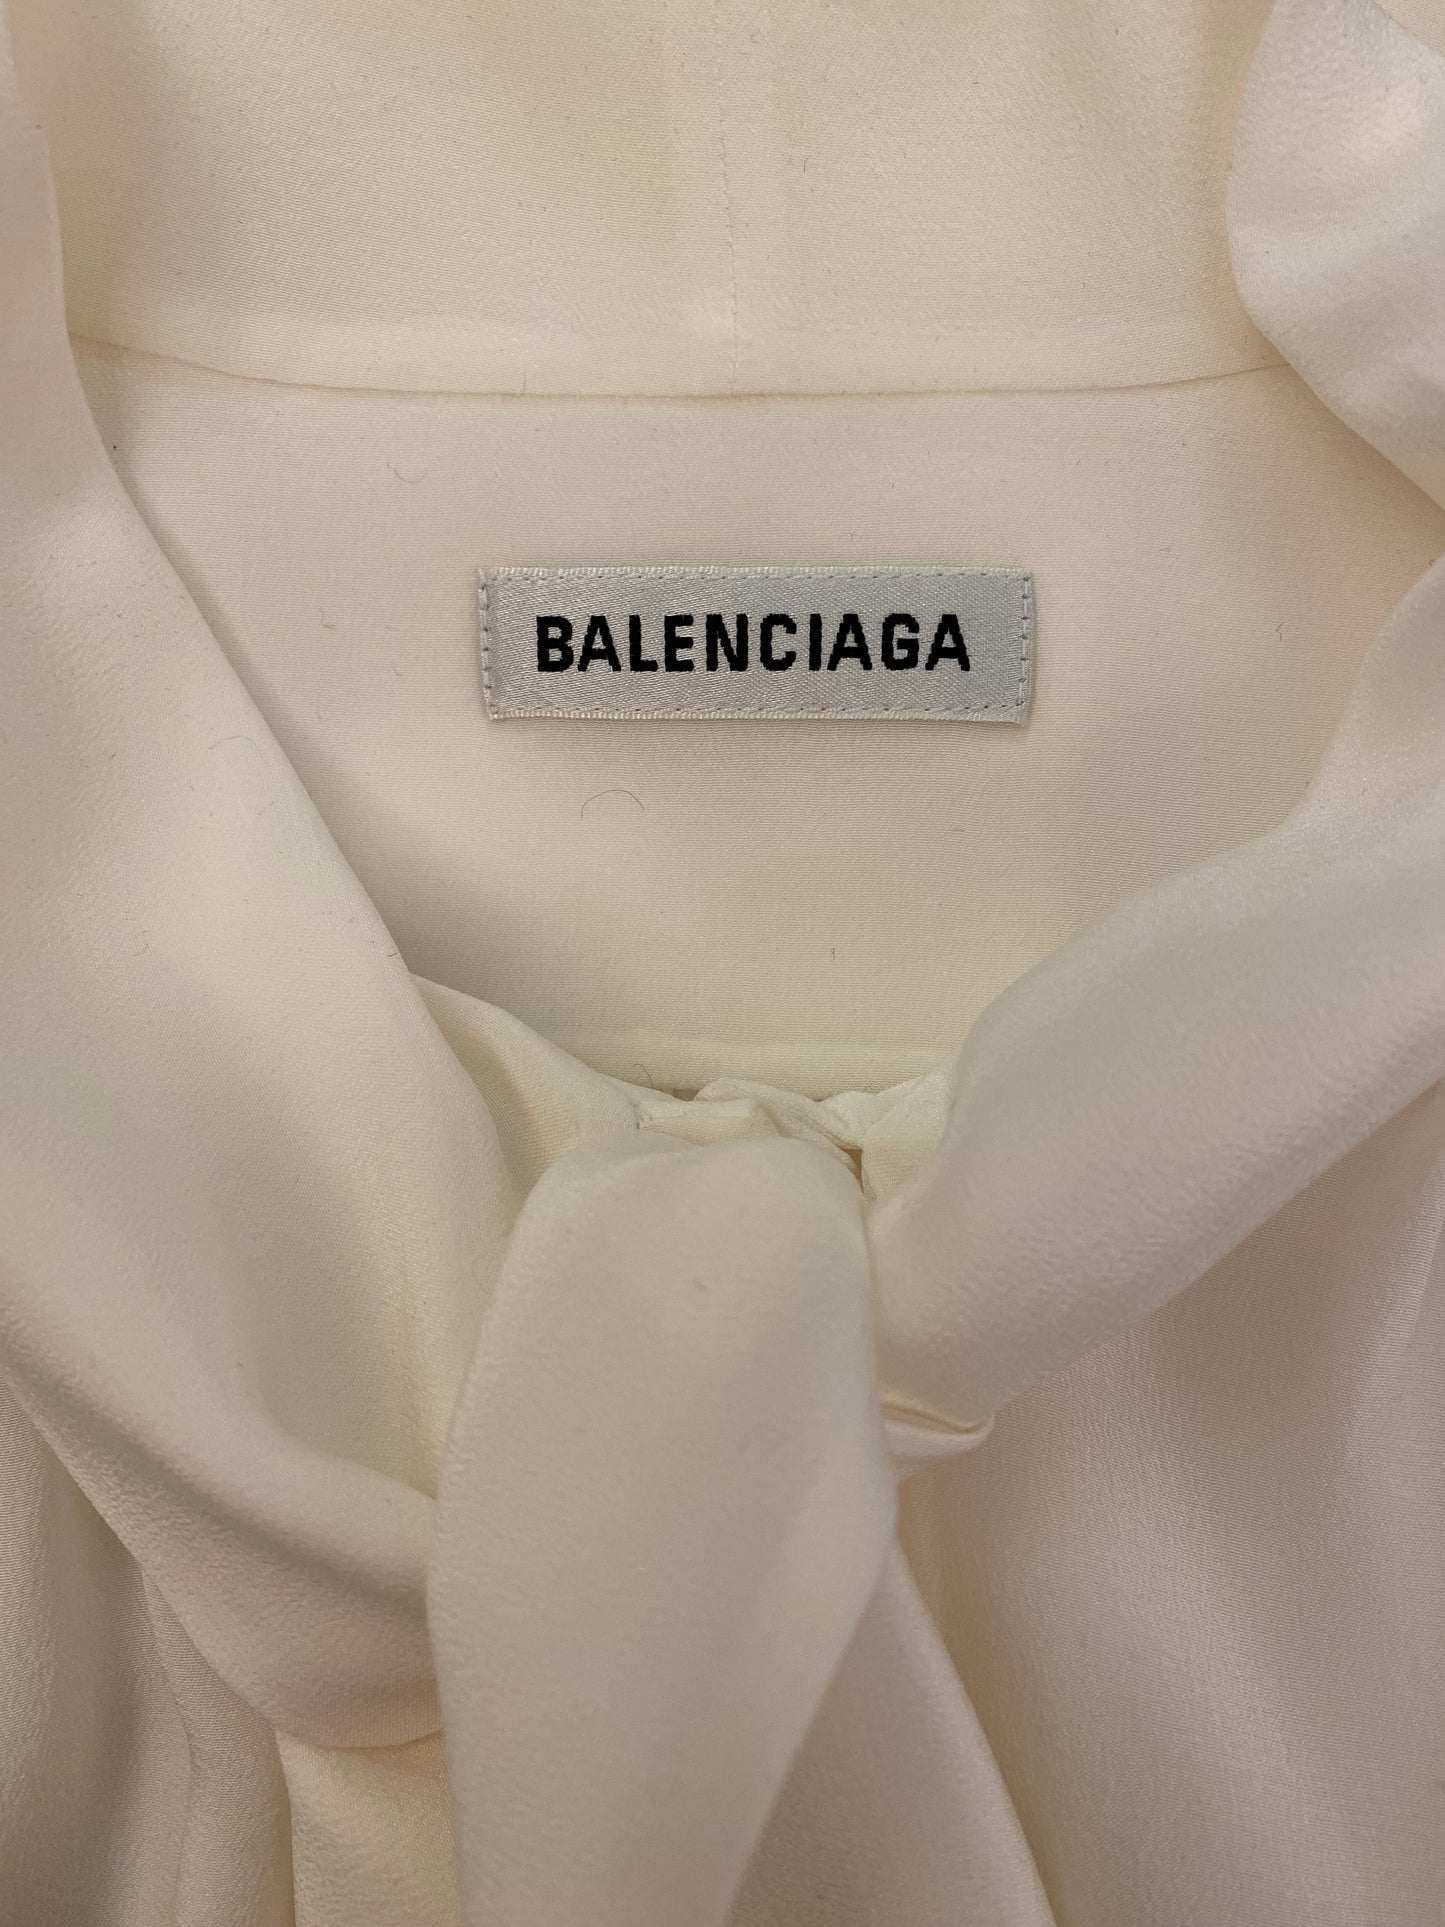 BALENCIAGA Tie-neck Silk Blouse Size 38